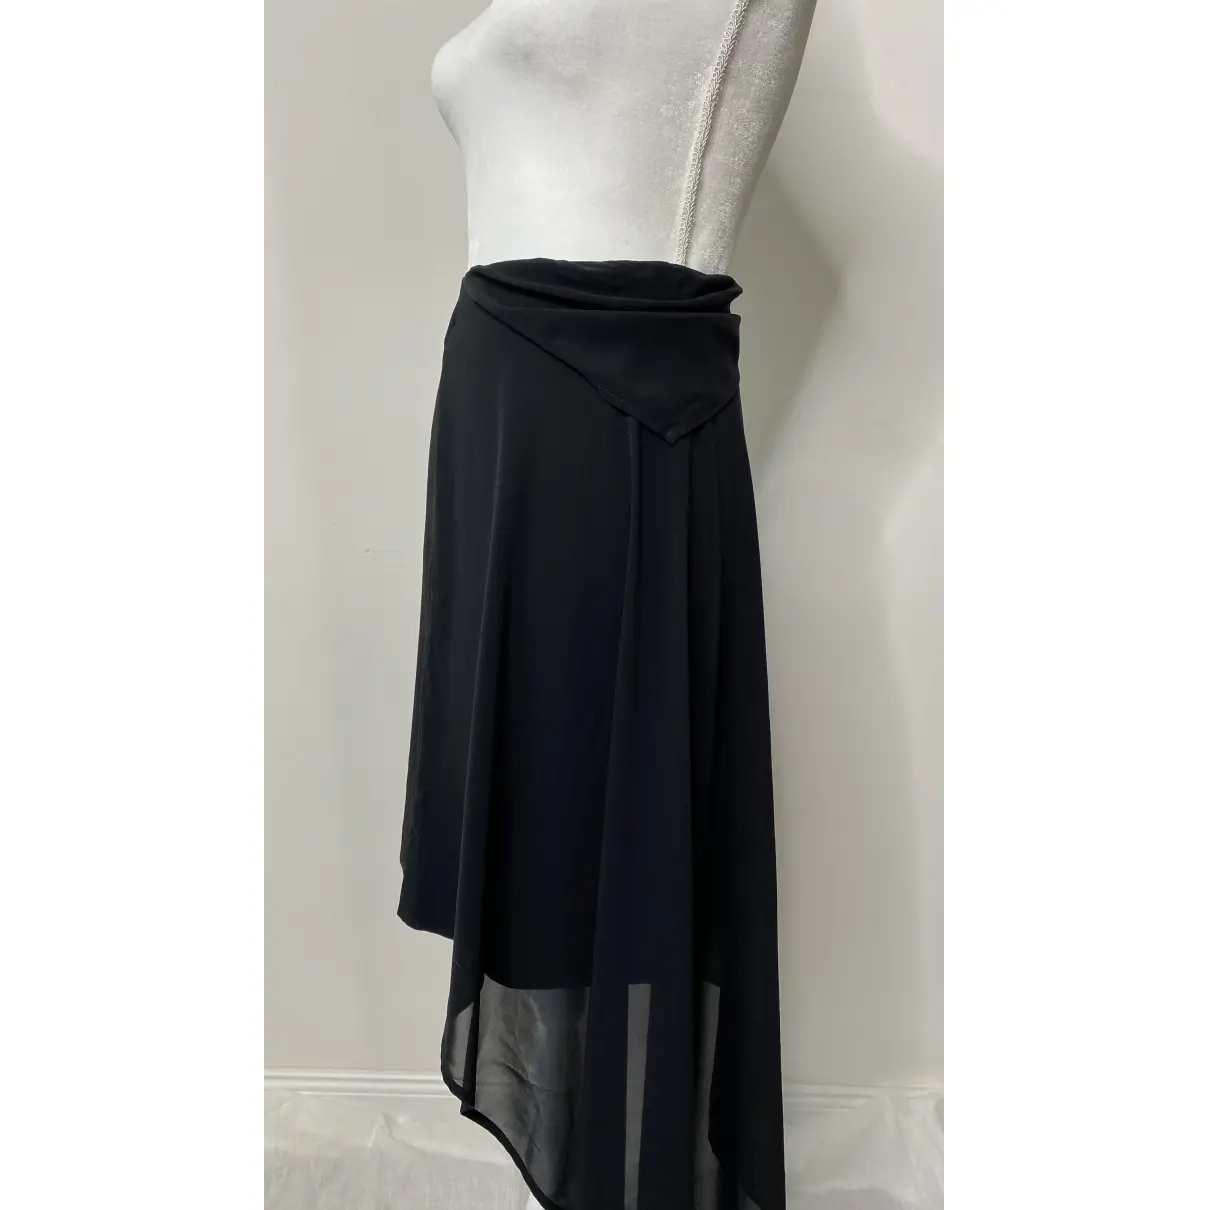 Buy A.F.Vandevorst Mini skirt online